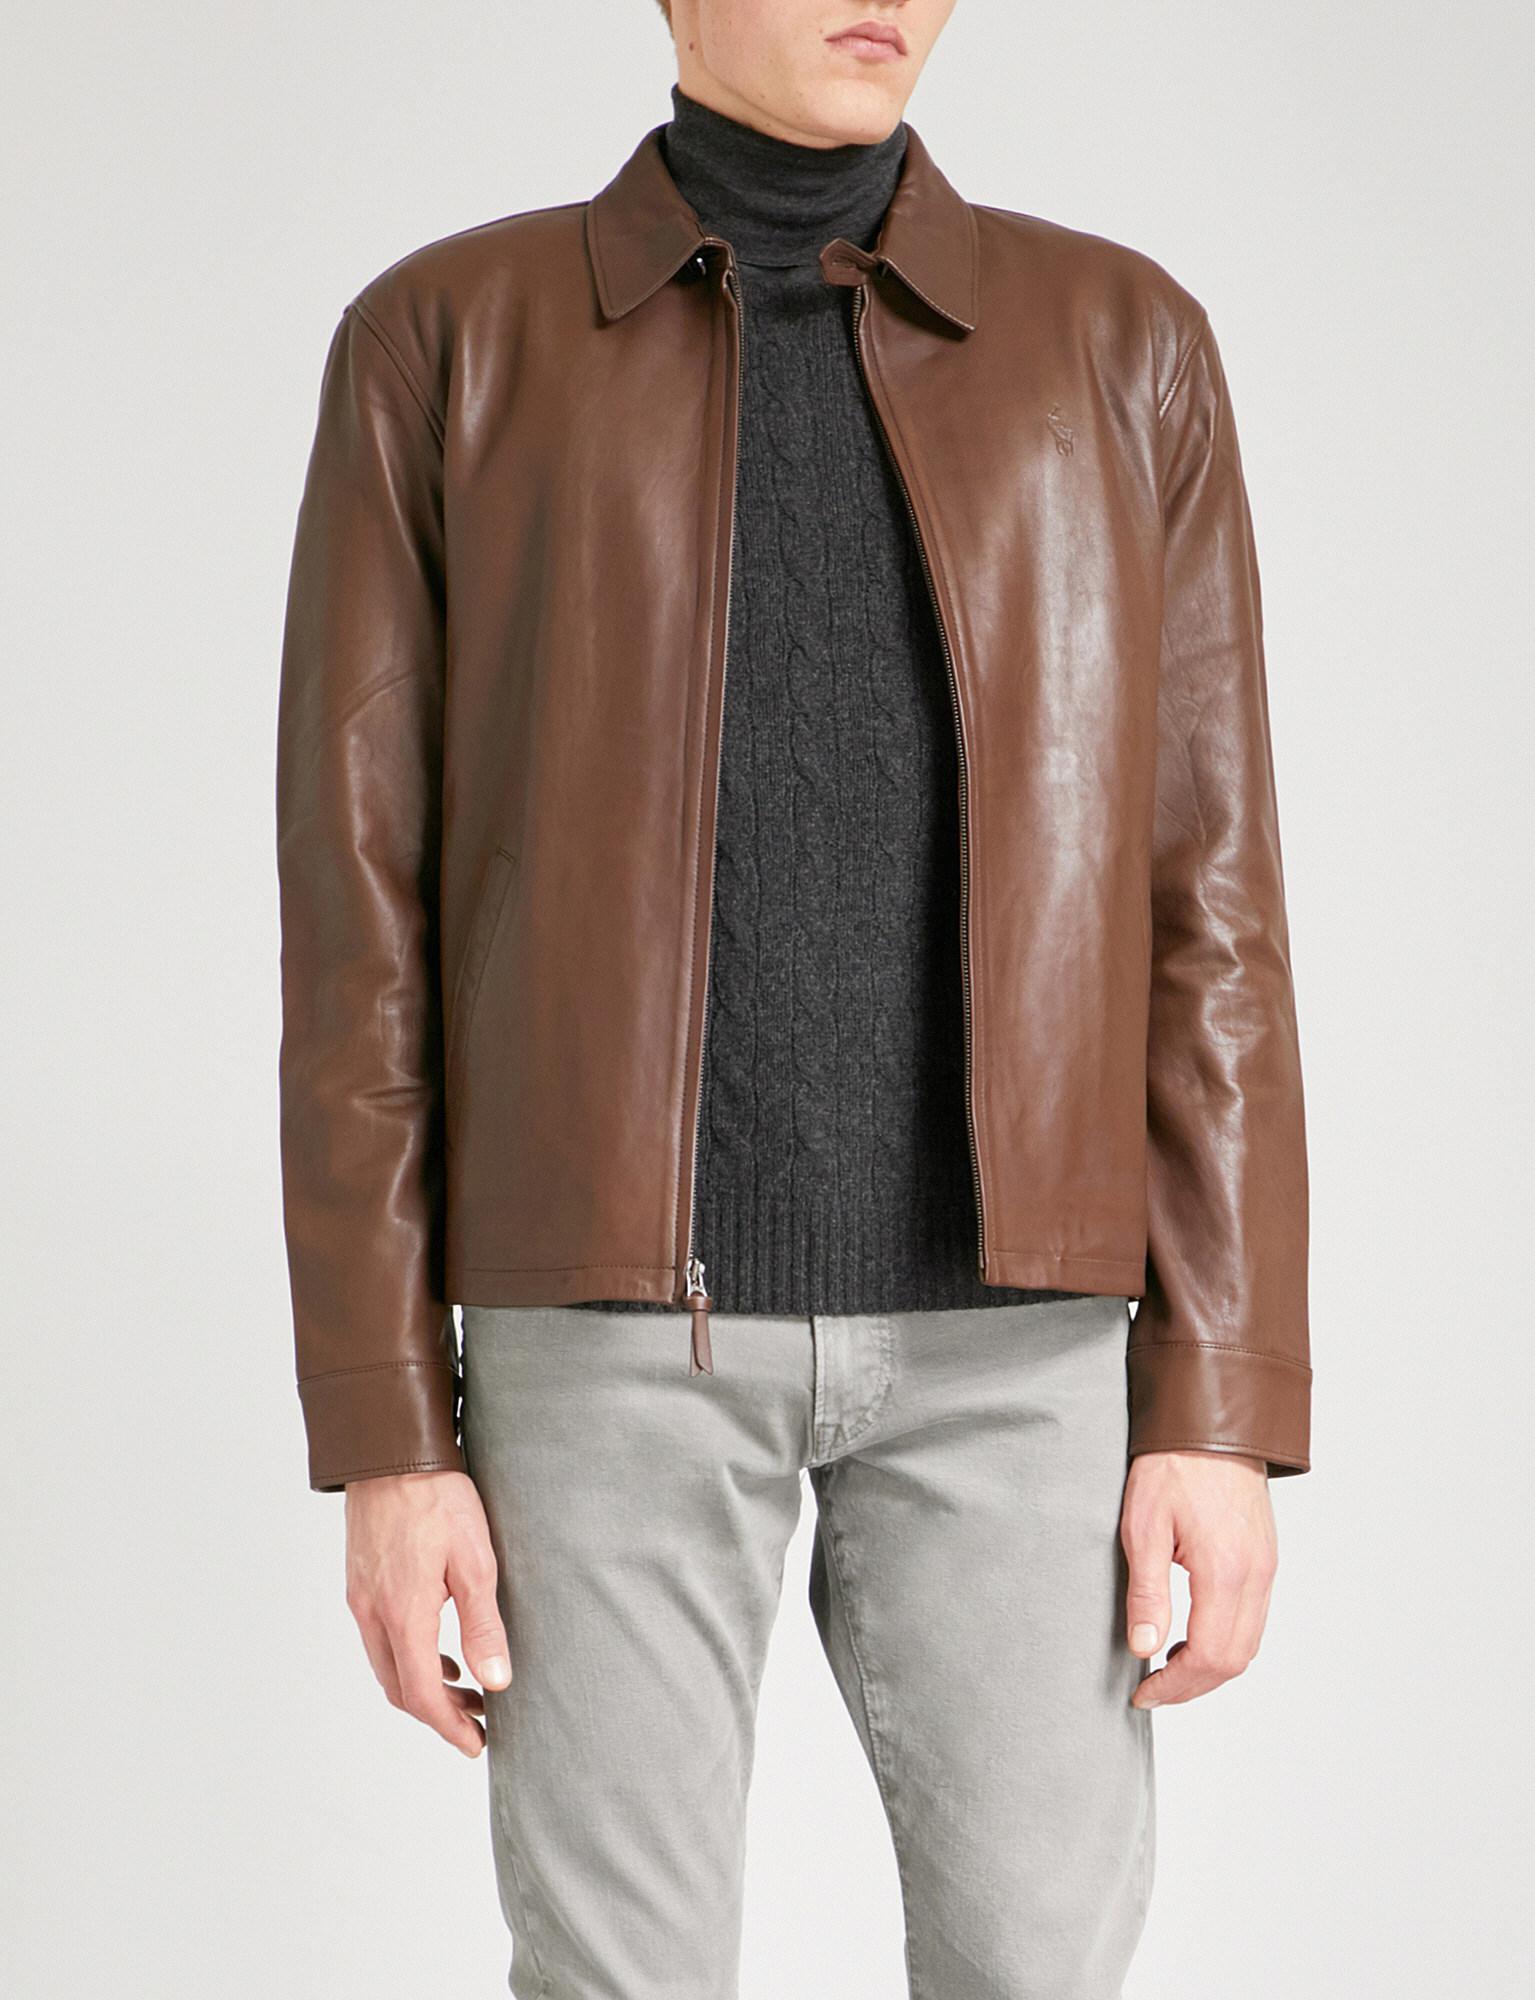 Ralph Lauren Mens Leather Jacket - www.inf-inet.com